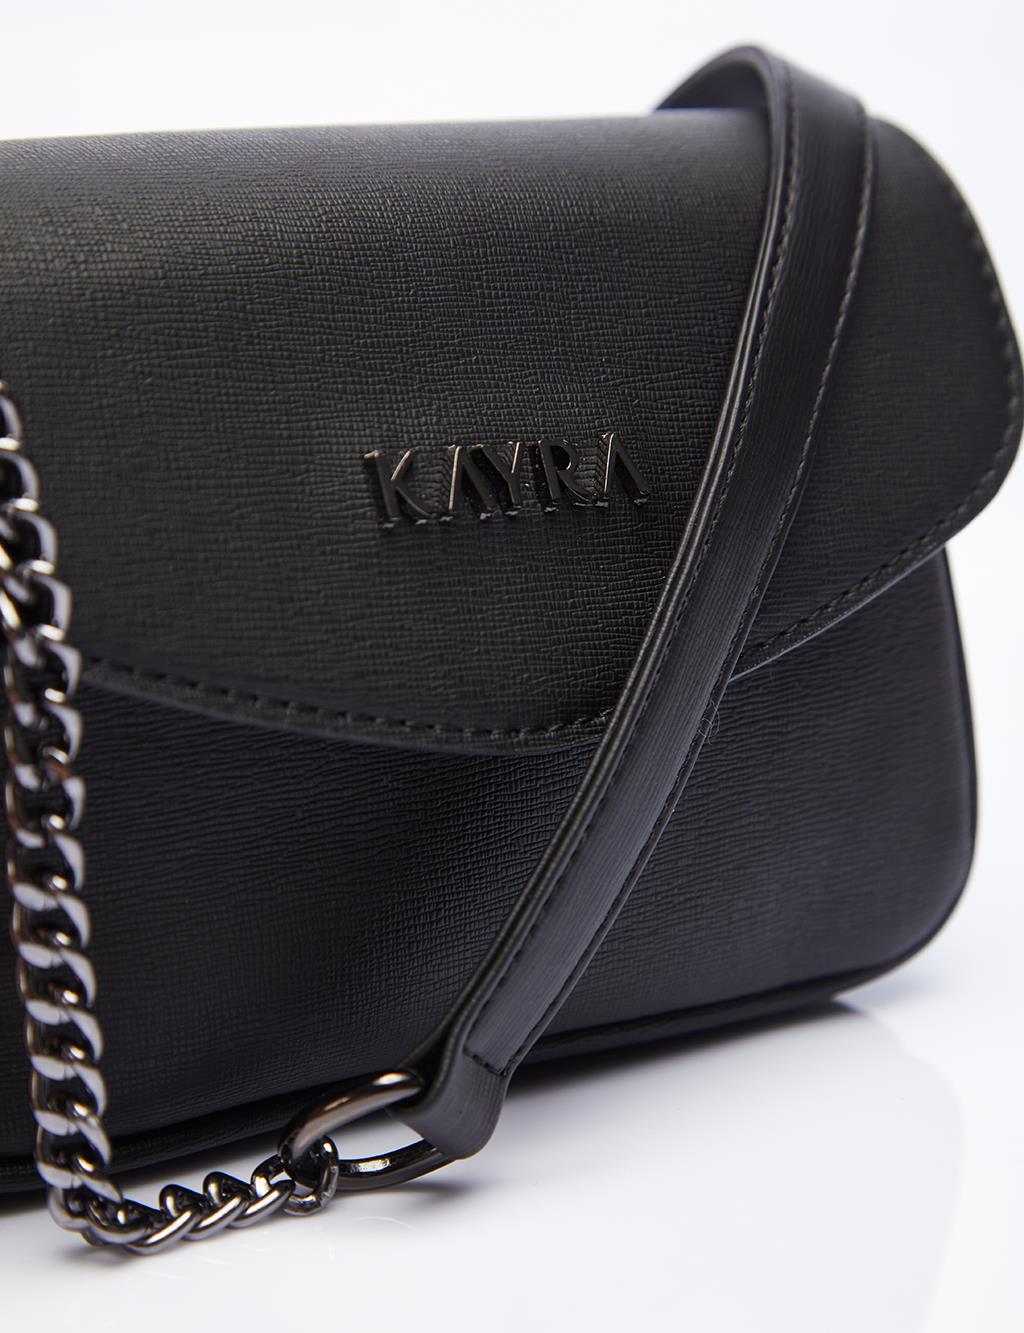 Chain Strap Shoulder Bag Black